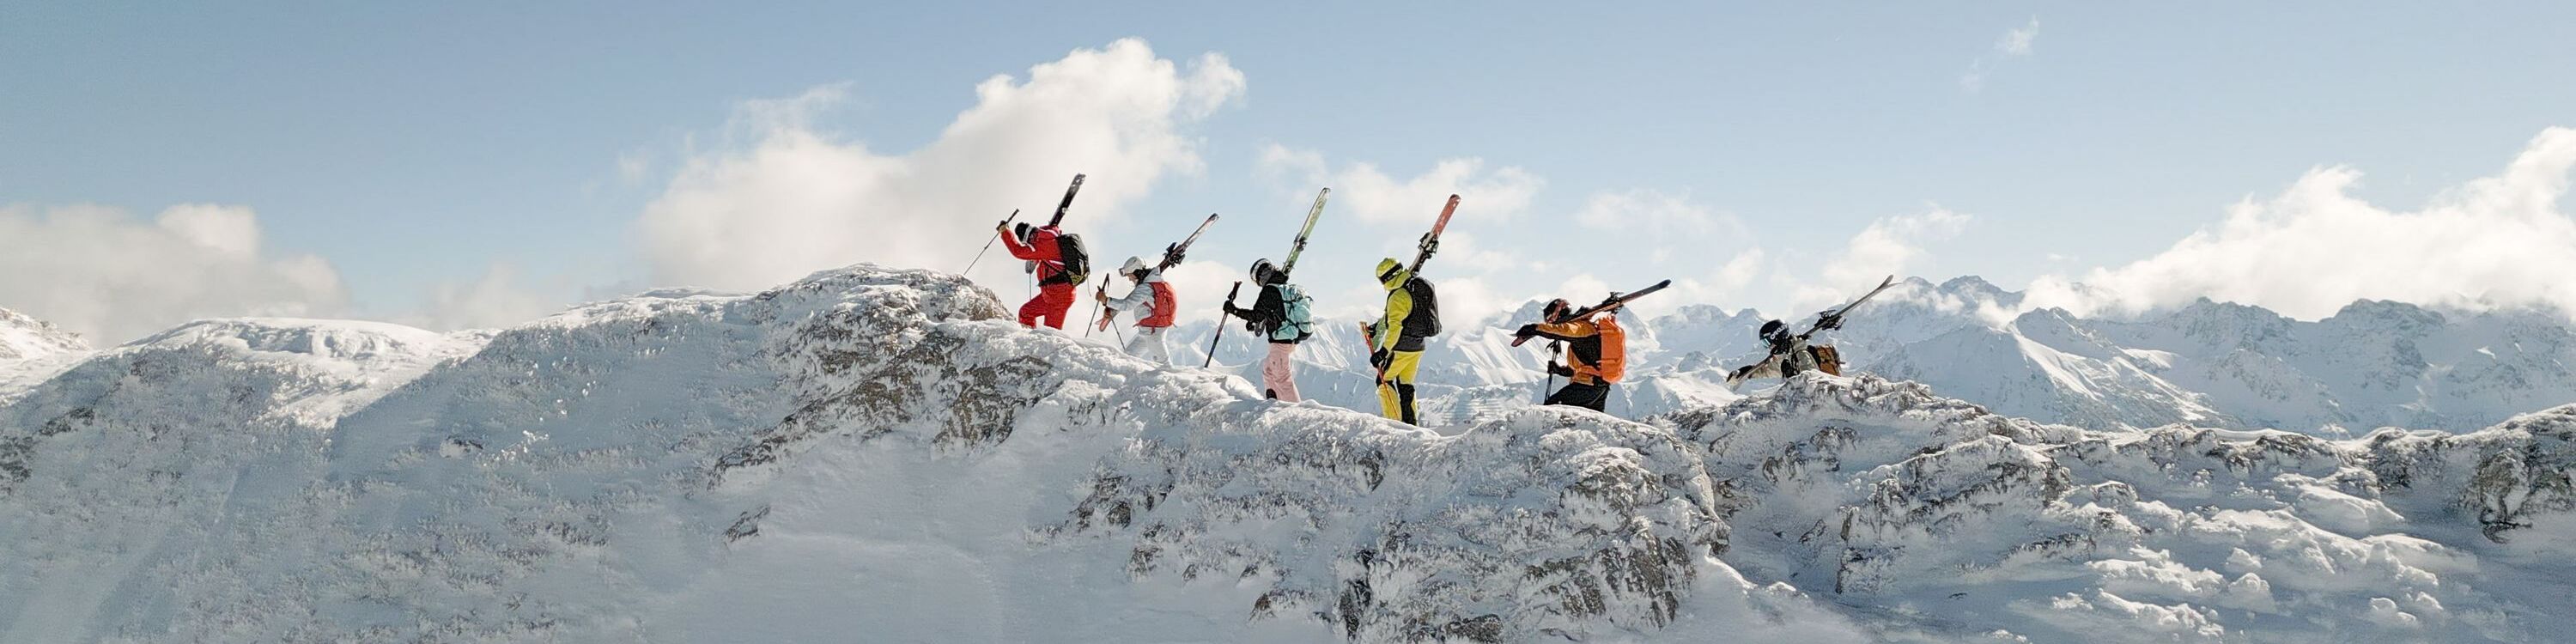 Skikurs schultert Skier hoch oben am Berg im Kleinwalsertal